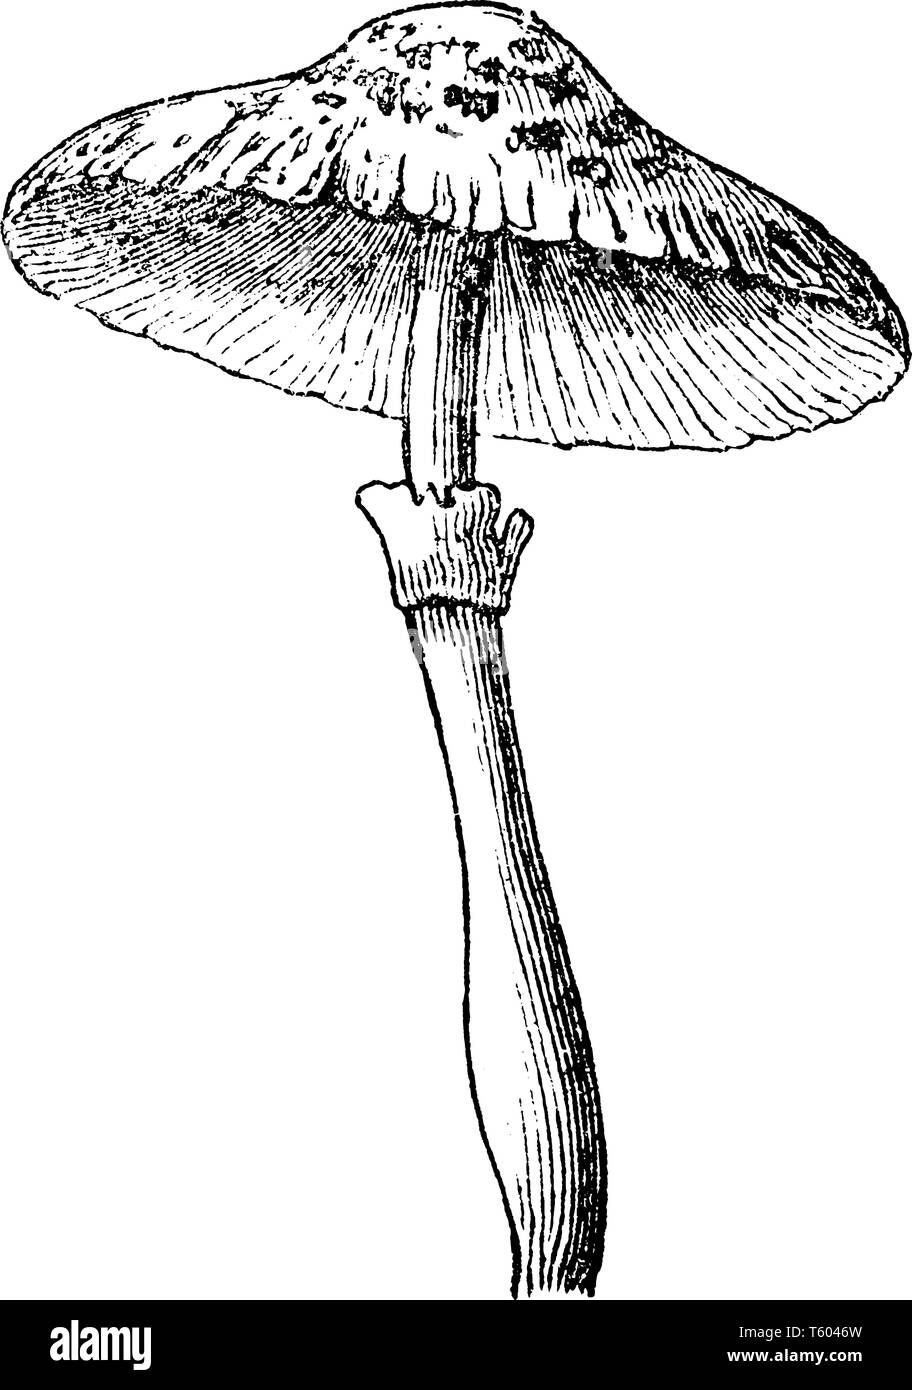 Agaricus Cepaestipesis eine Spezies von Pilzen. Es hat eine fein skalierte glockenförmige Kappe, vintage Strichzeichnung oder Gravur Abbildung. Stock Vektor